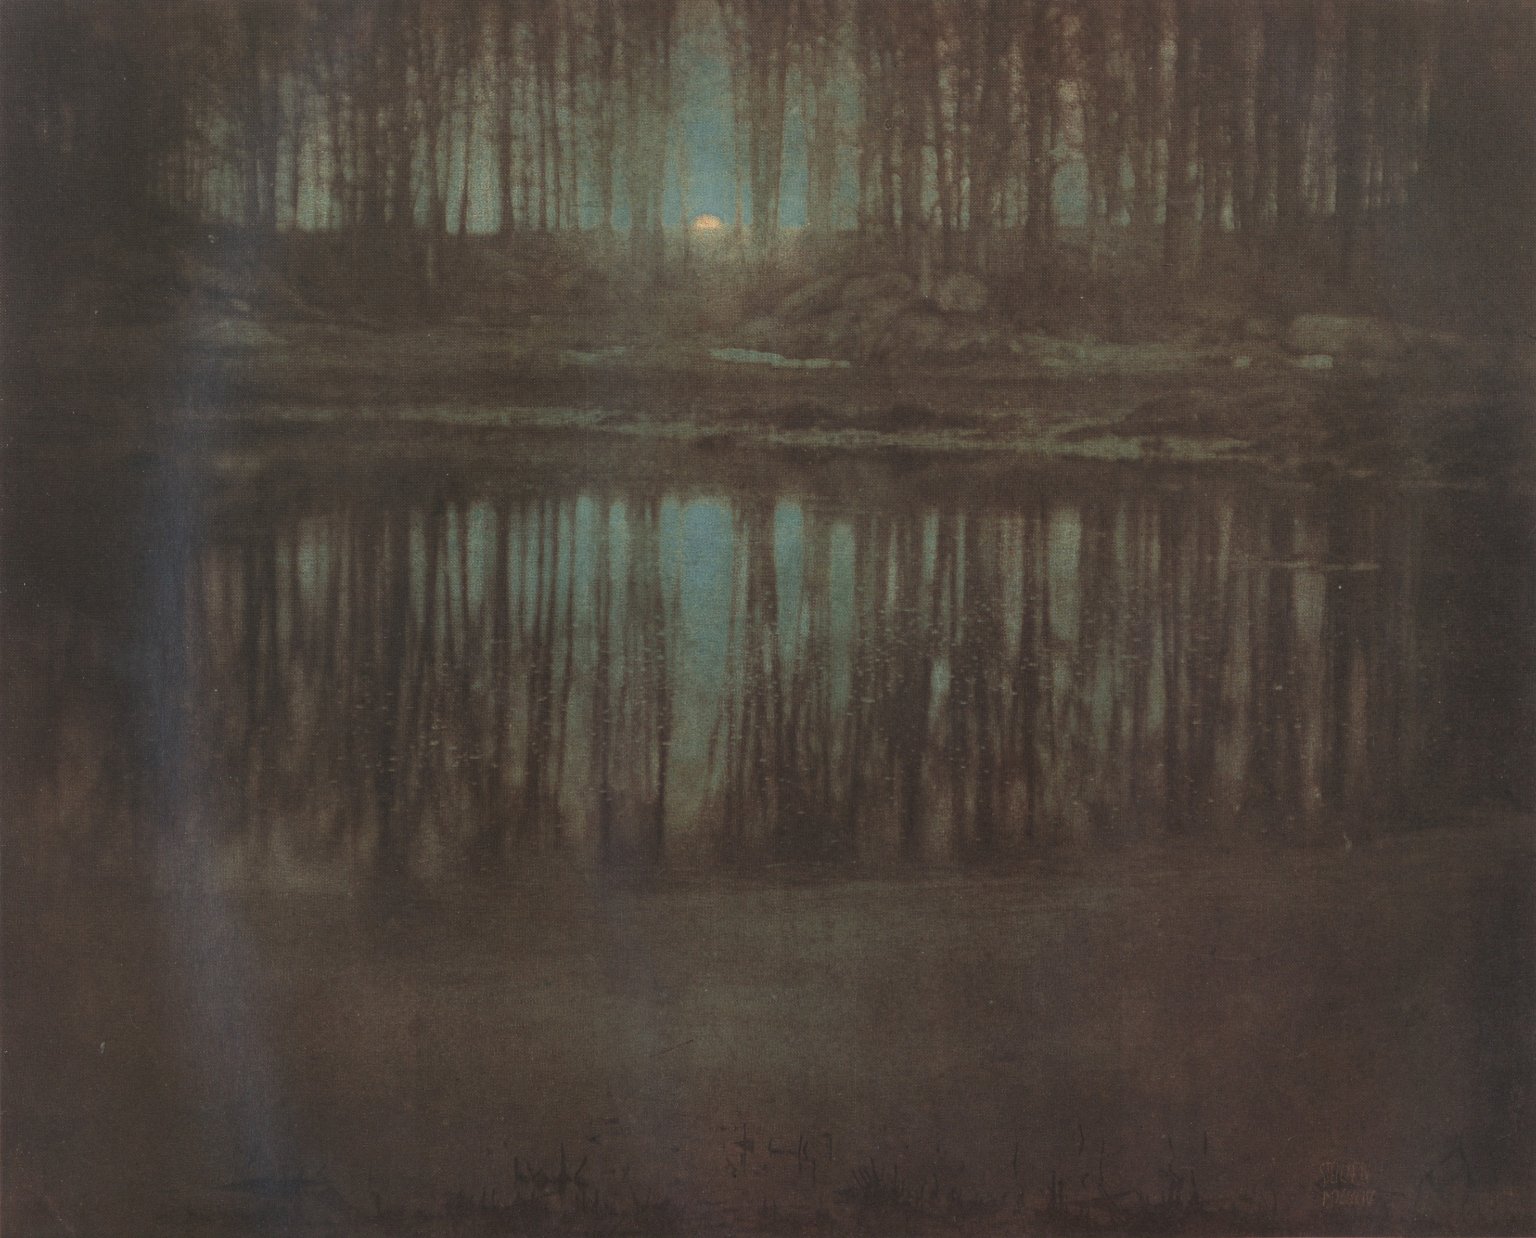 [The+Pond-Moonlight.jpg]